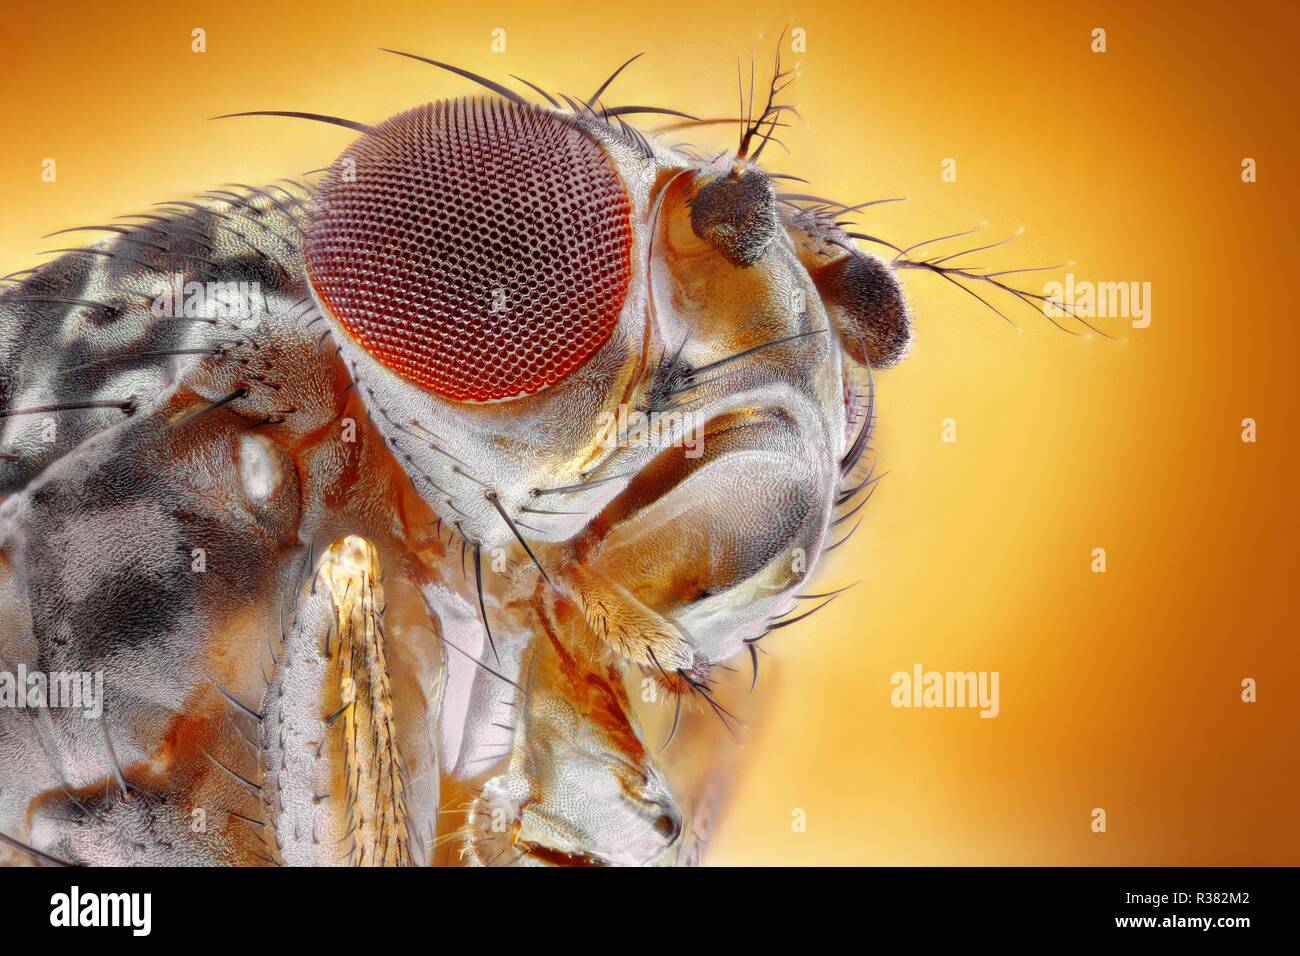 Extrem scharfes und detailliertes Bild der Fruchtfliege zu einer extremen Vergrößerung mit einem Mikroskop Ziel genommen. Stockfoto